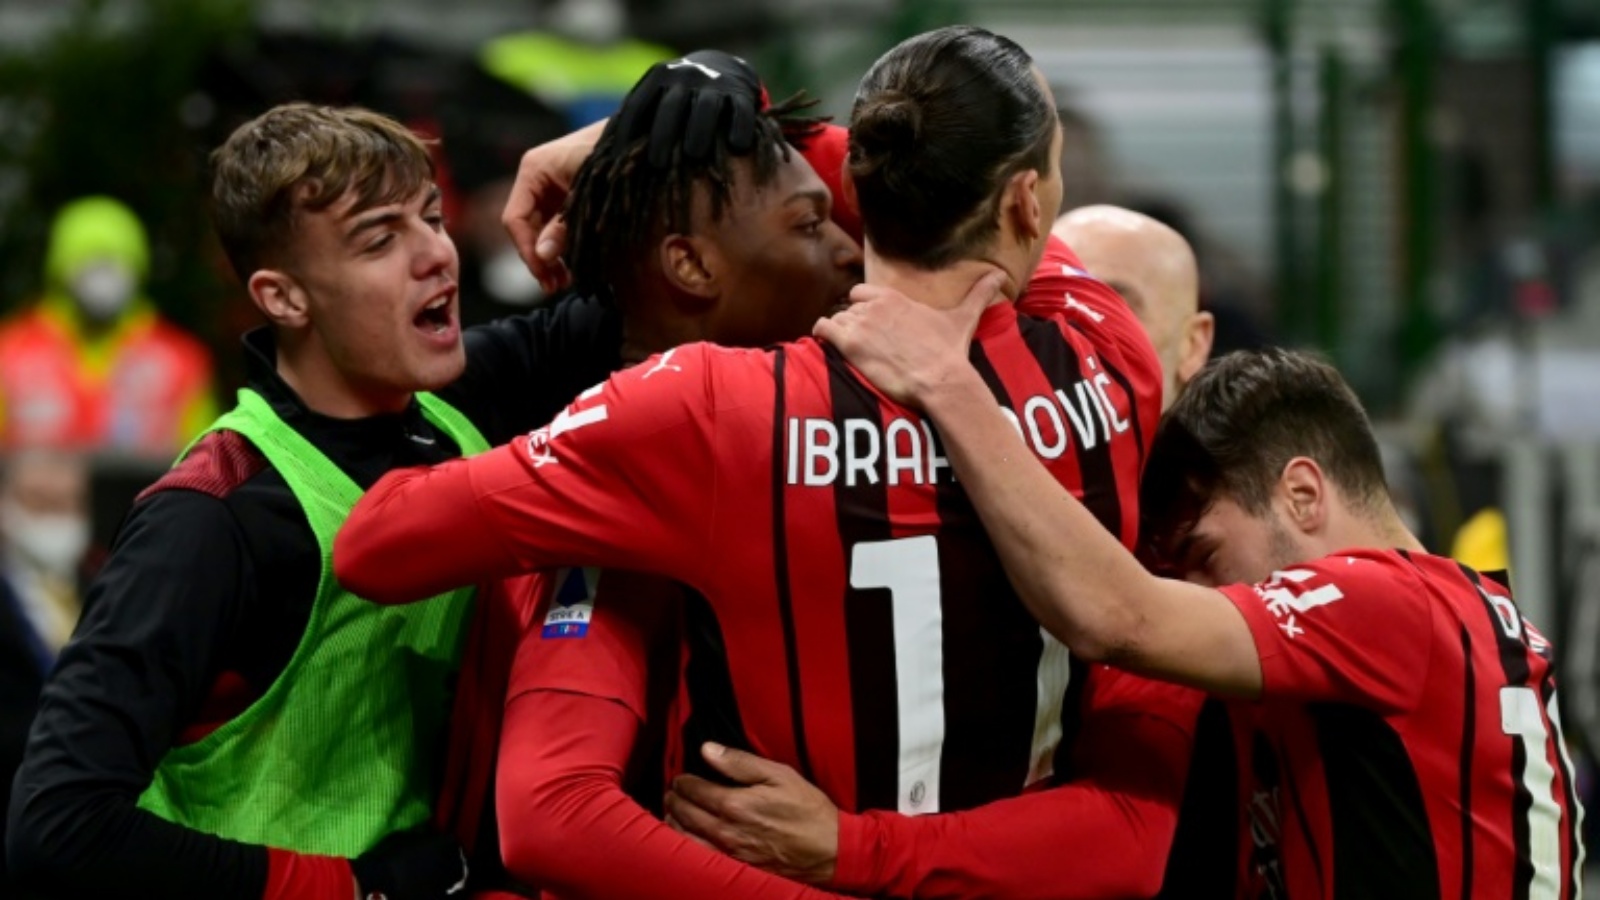 البرتغالي رافايل لياو يحتفل مع زملائه في ميلان بتسجيل هدف ضد روما في الدوري الإيطالي لكرة القدم على ملعب سان سيرو في 6 كانون الثاني/يناير 2022